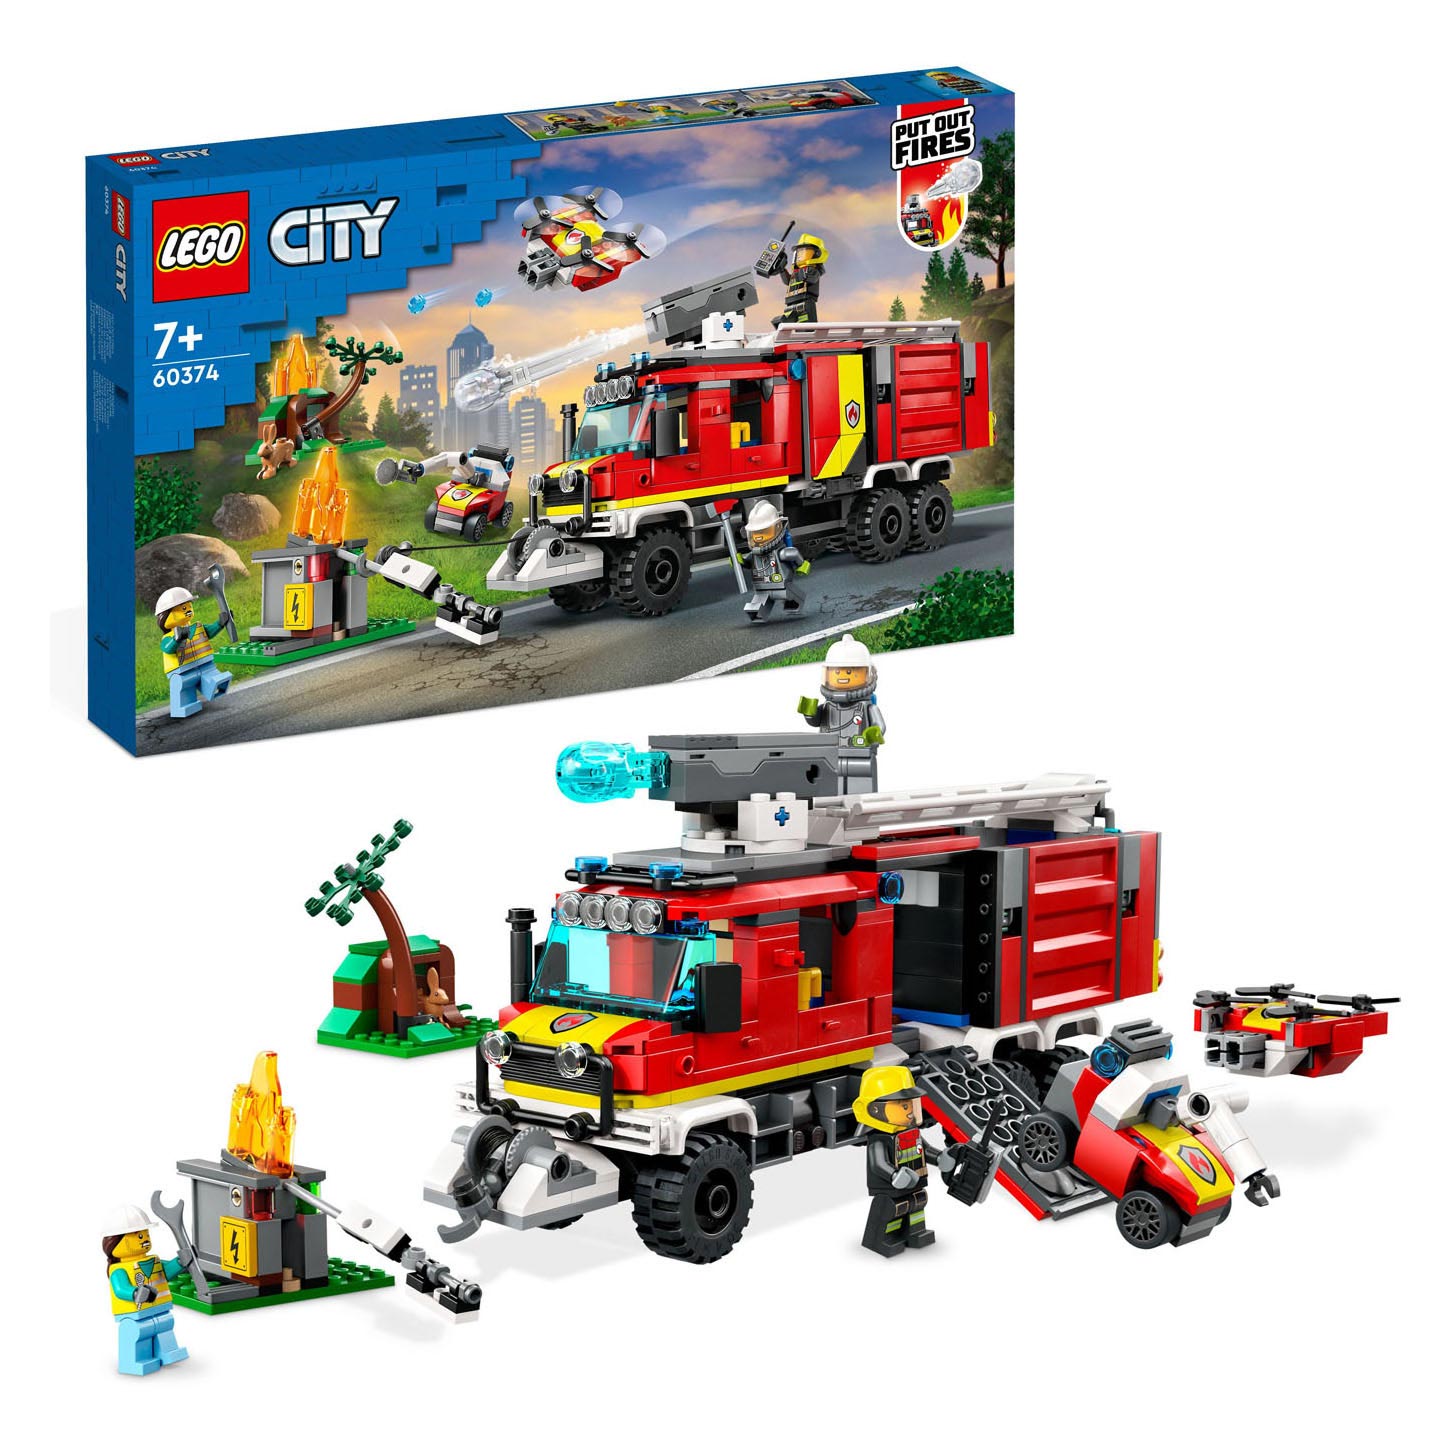 Doorweekt Vermenigvuldiging Overweldigend LEGO City 60374 Fire Truck | Thimble Toys